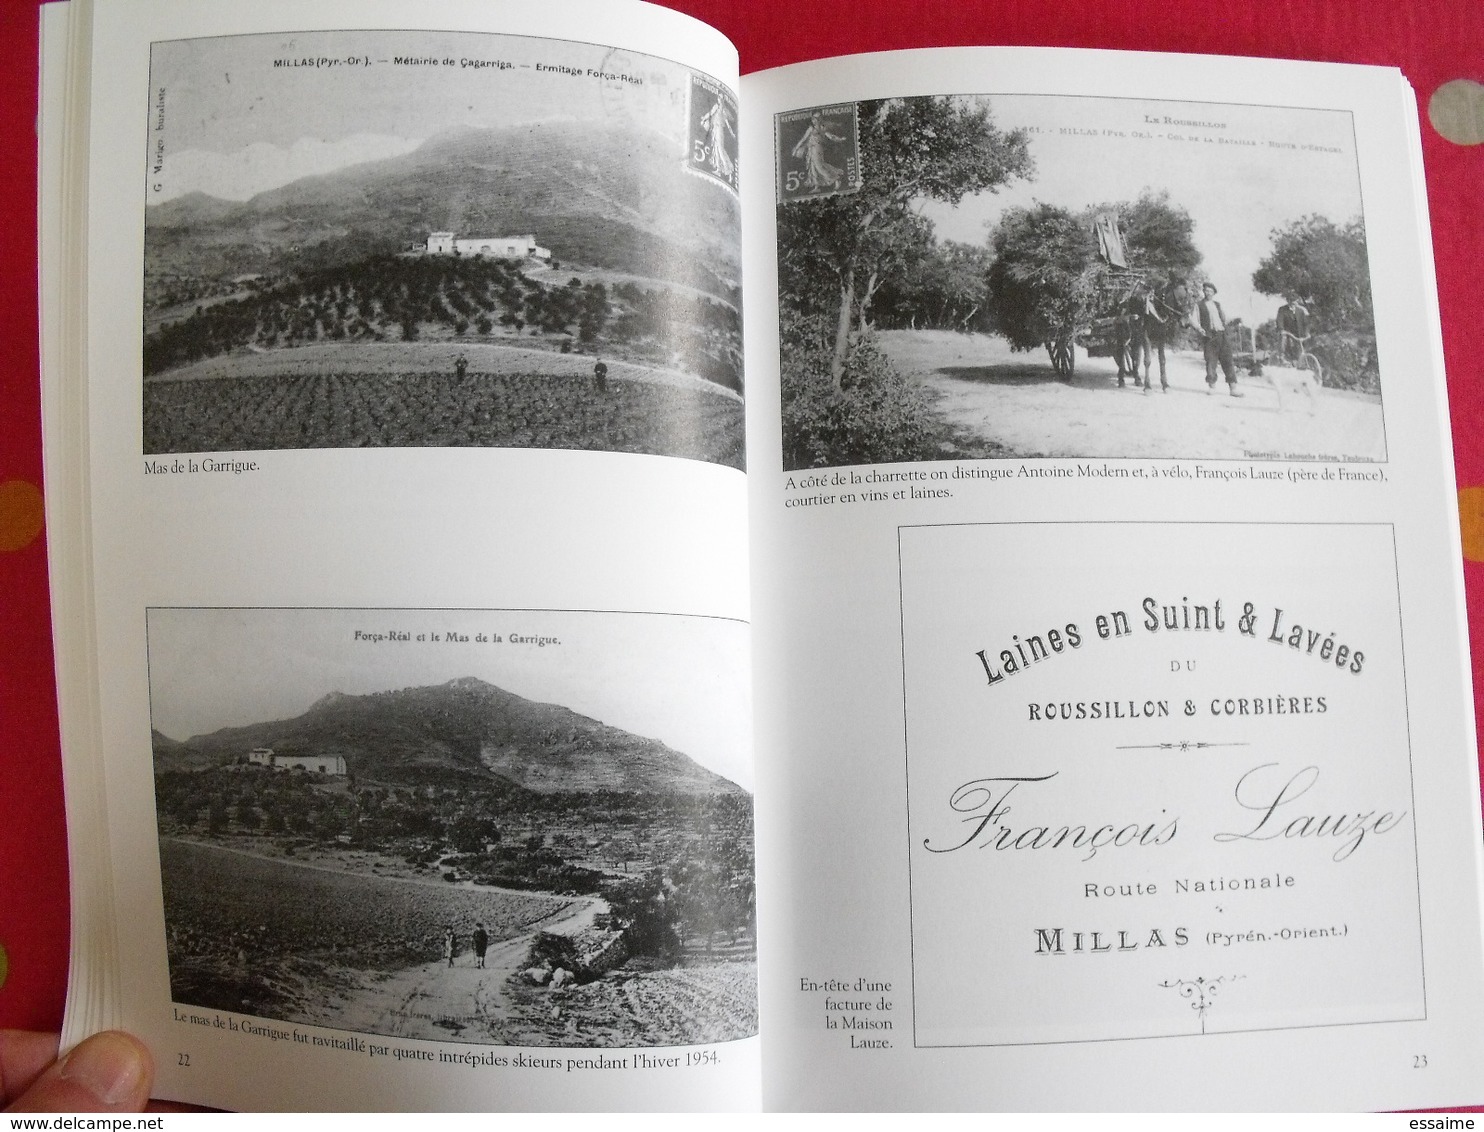 Millas, Aude Ariège. Gérald Torrès. Mémoire en images. éditions Alan Sutton. 2008. cartes postales photos